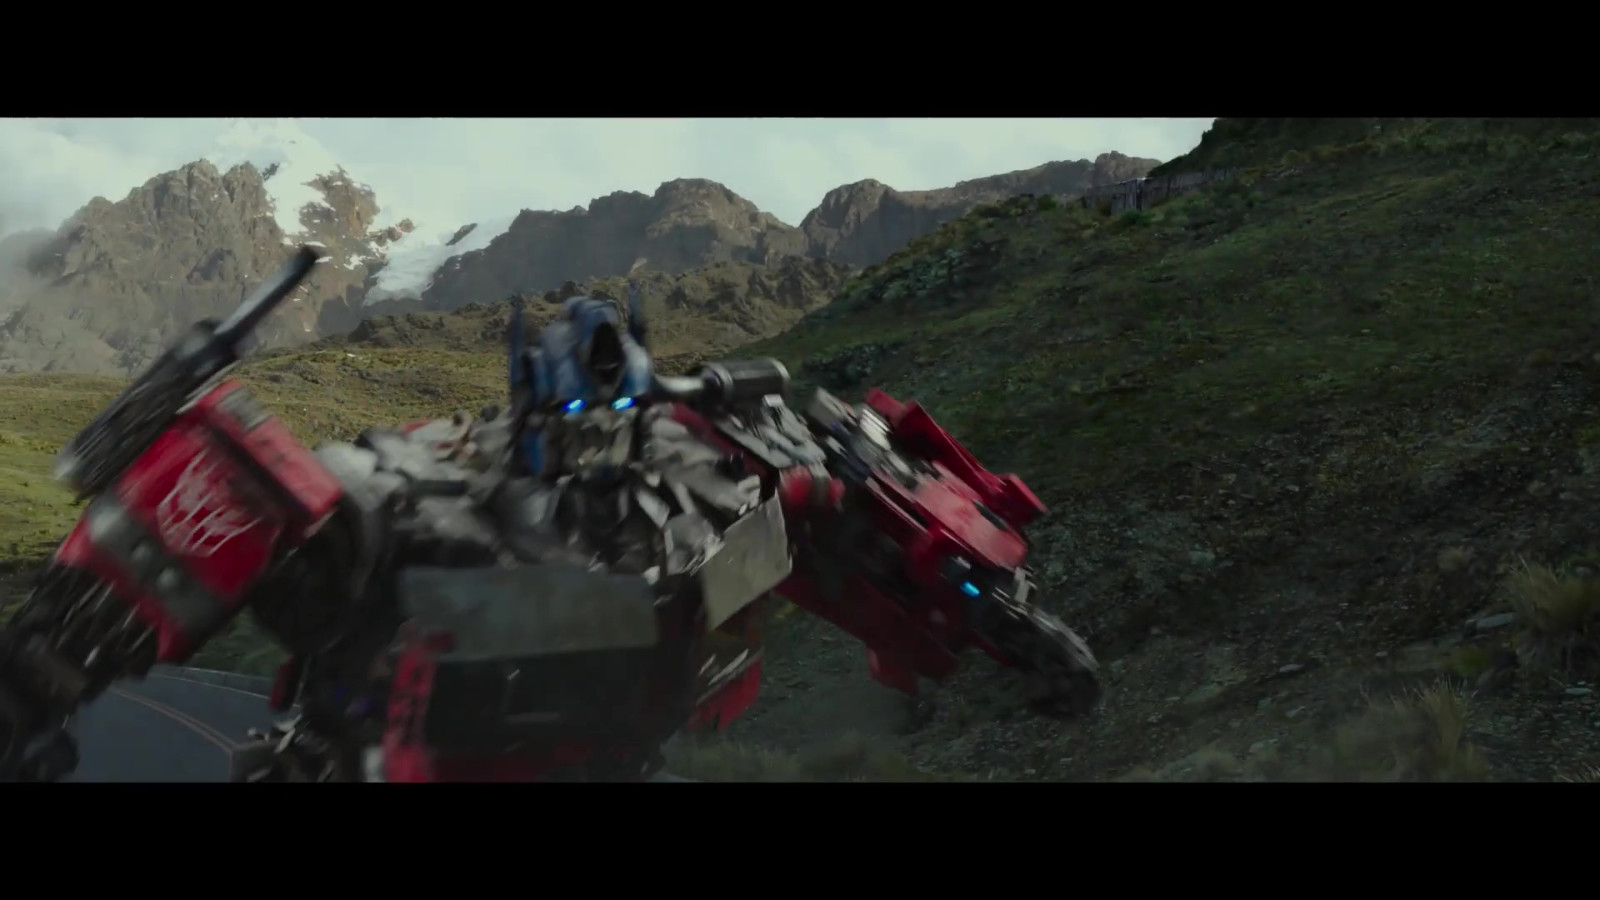 天竺鼠车车联动变形金刚 为《超能勇士崛起》日本上映预热